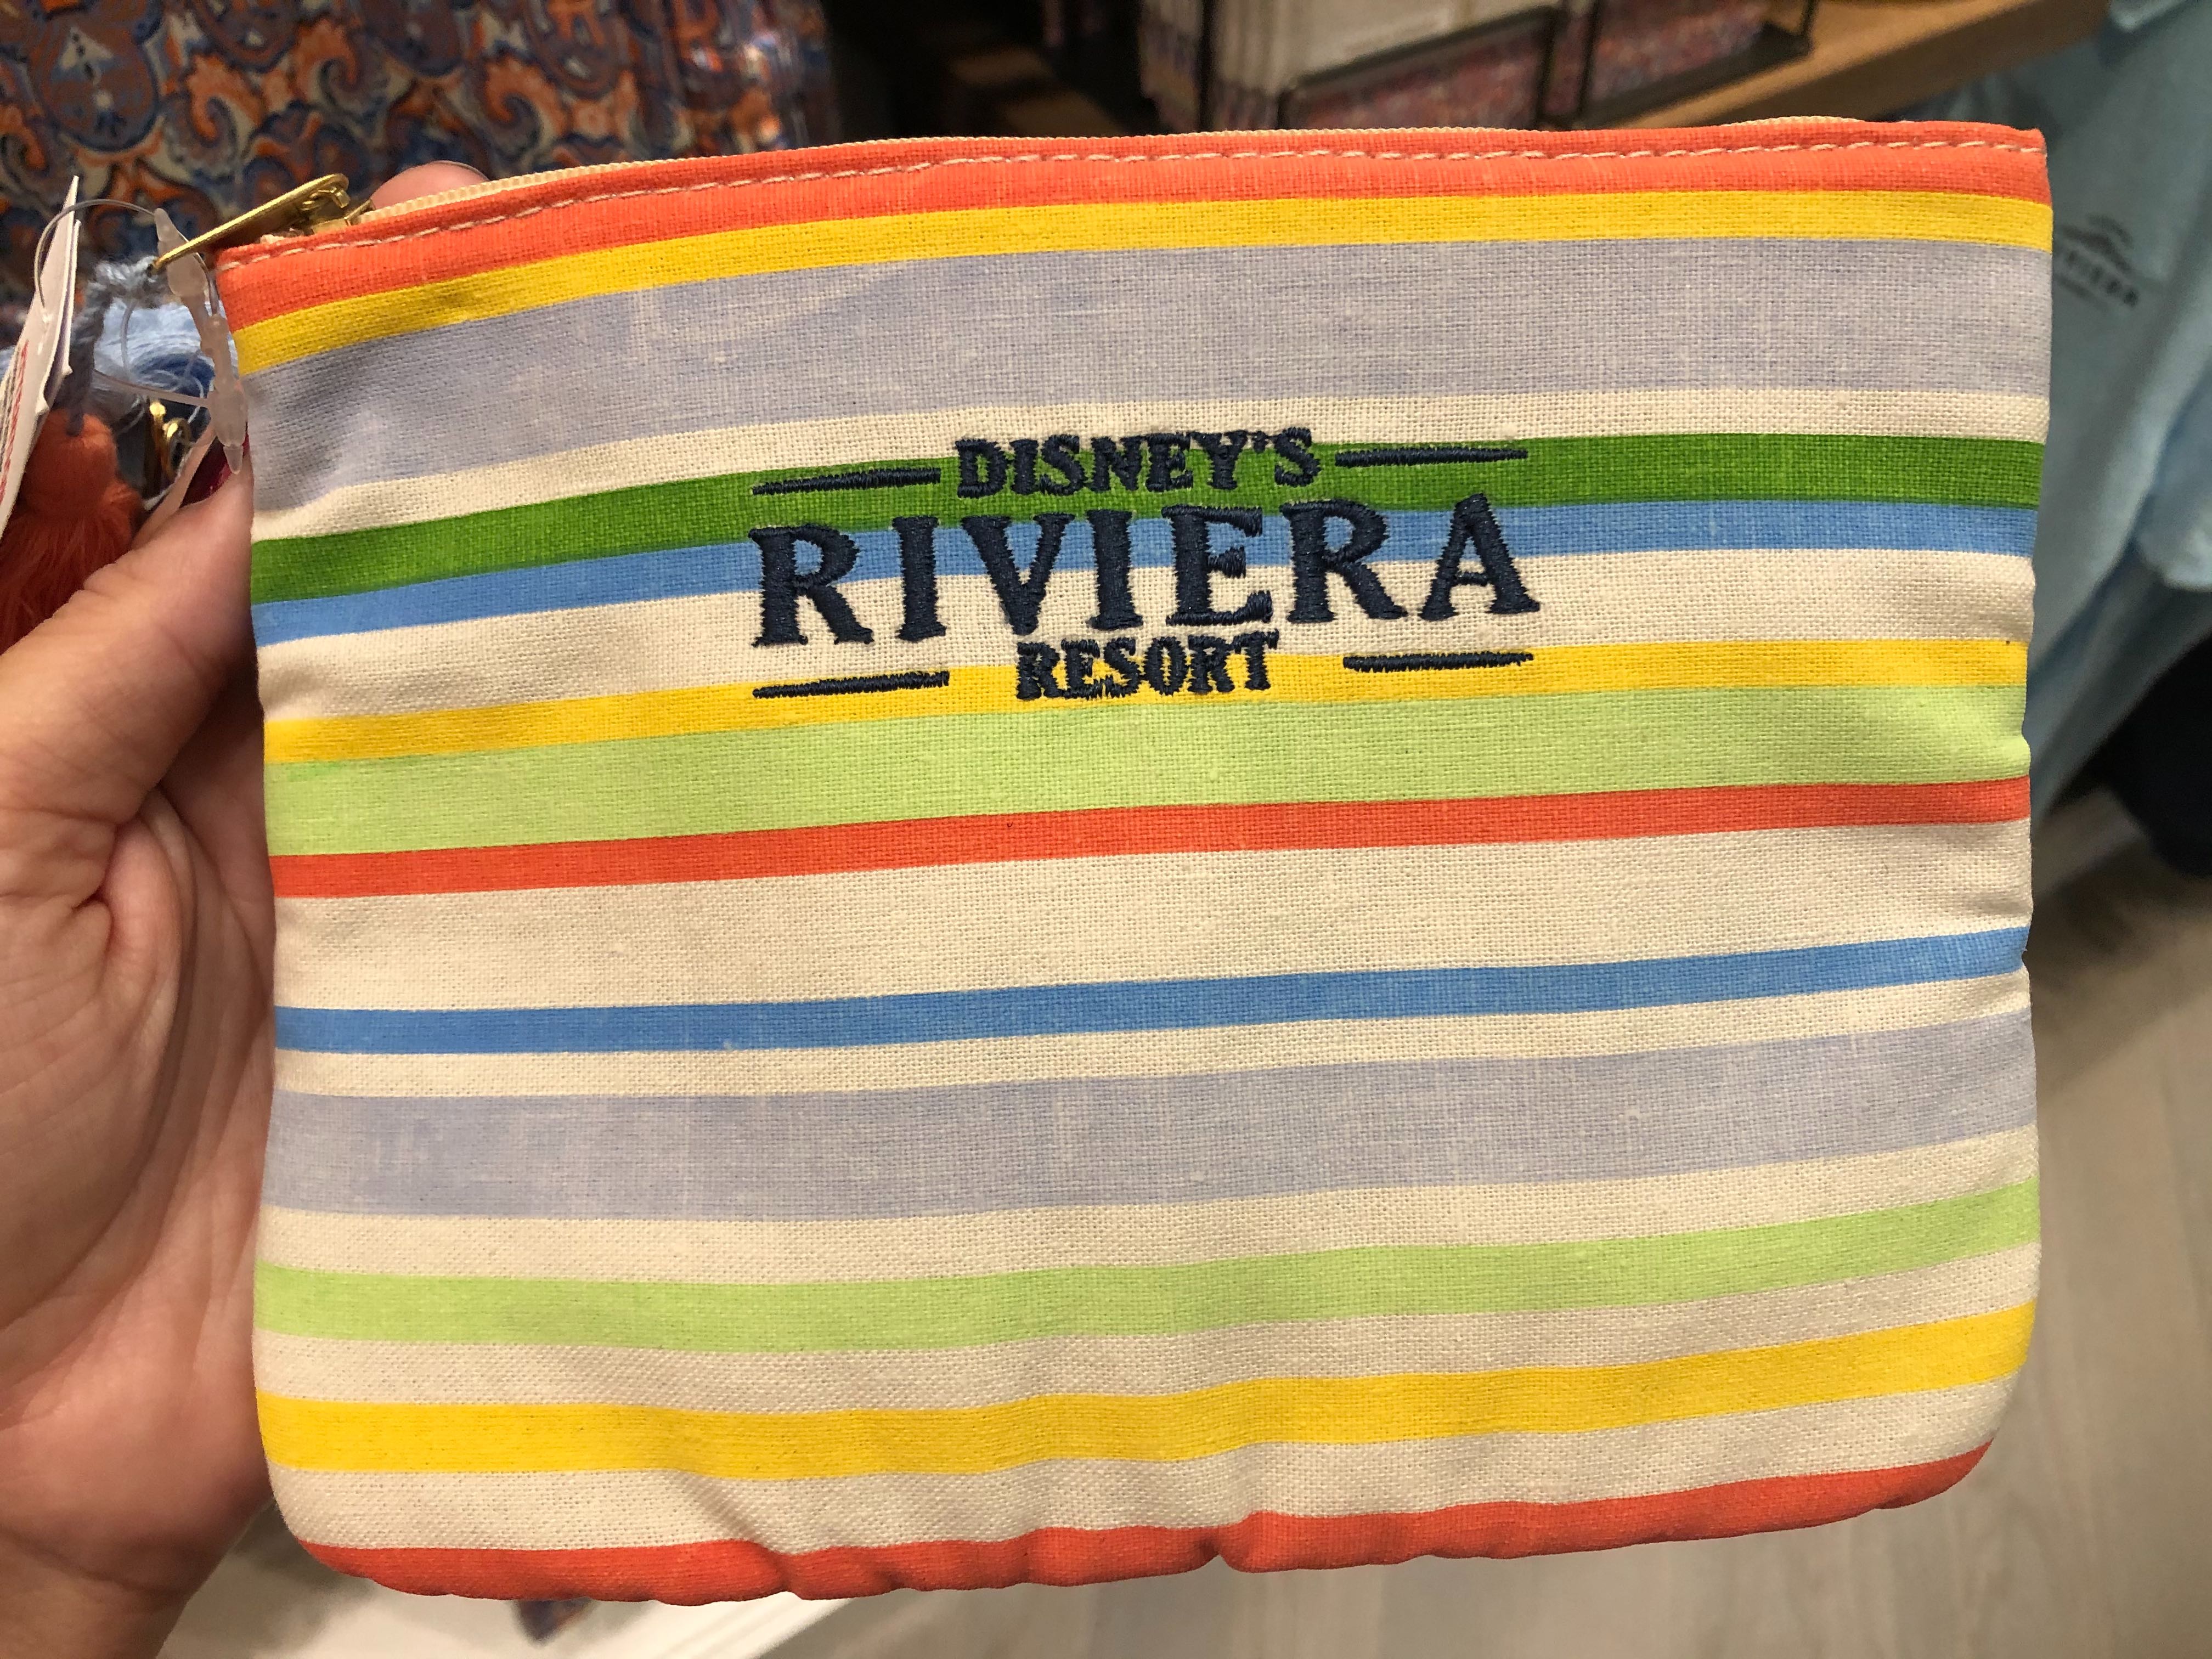 Riviera Resort 3 Bag Travel Kit - $44.99